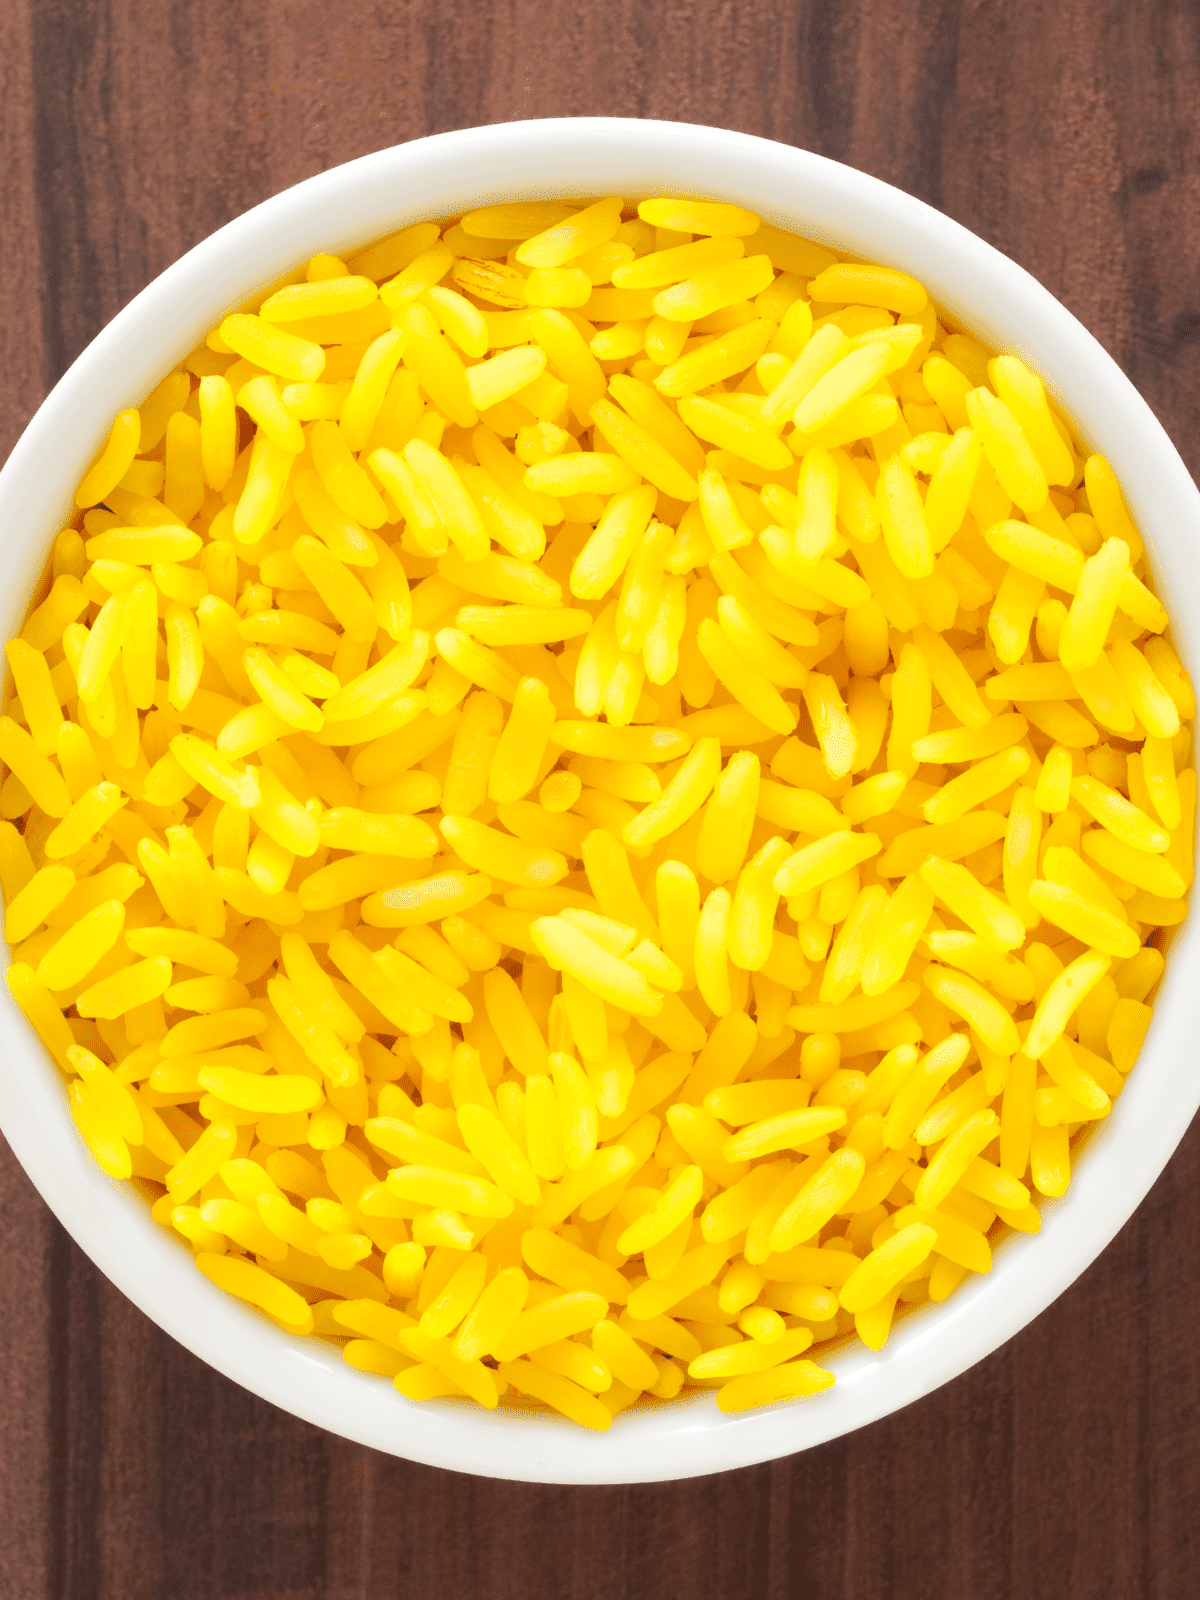 Bright yellow saffron rice in a bowl.